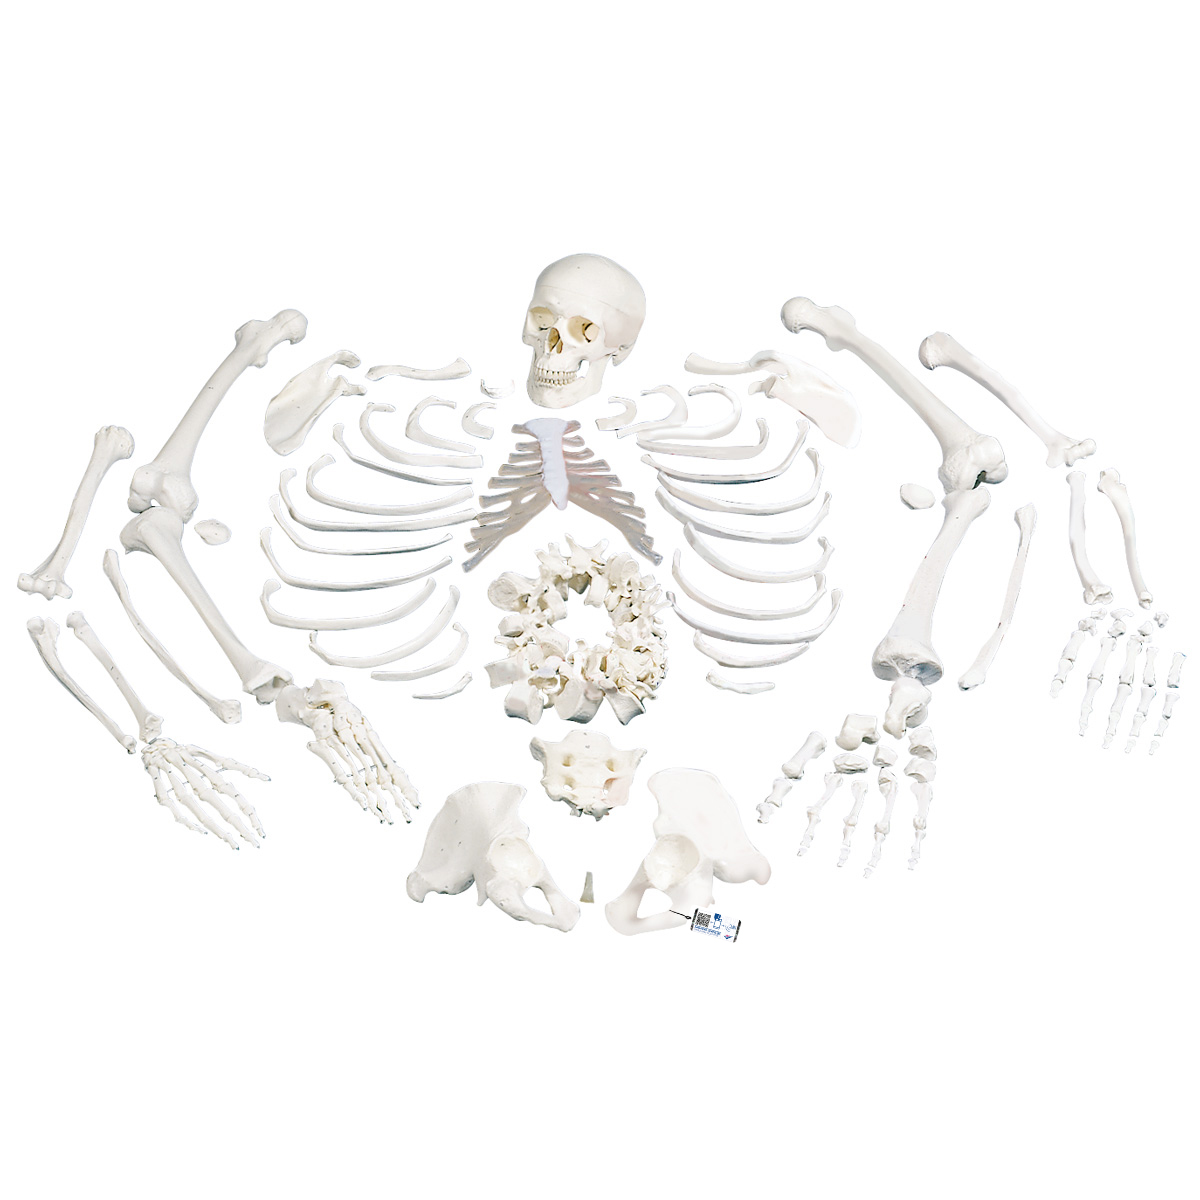 Unmontiertes komplettes Skelett Modell, Knochen von Hand & Fuß auf Draht & Nylon, lebensgroß - 3B Smart Anatomy, Bestellnummer 1020157, A05/1, 3B Scientific